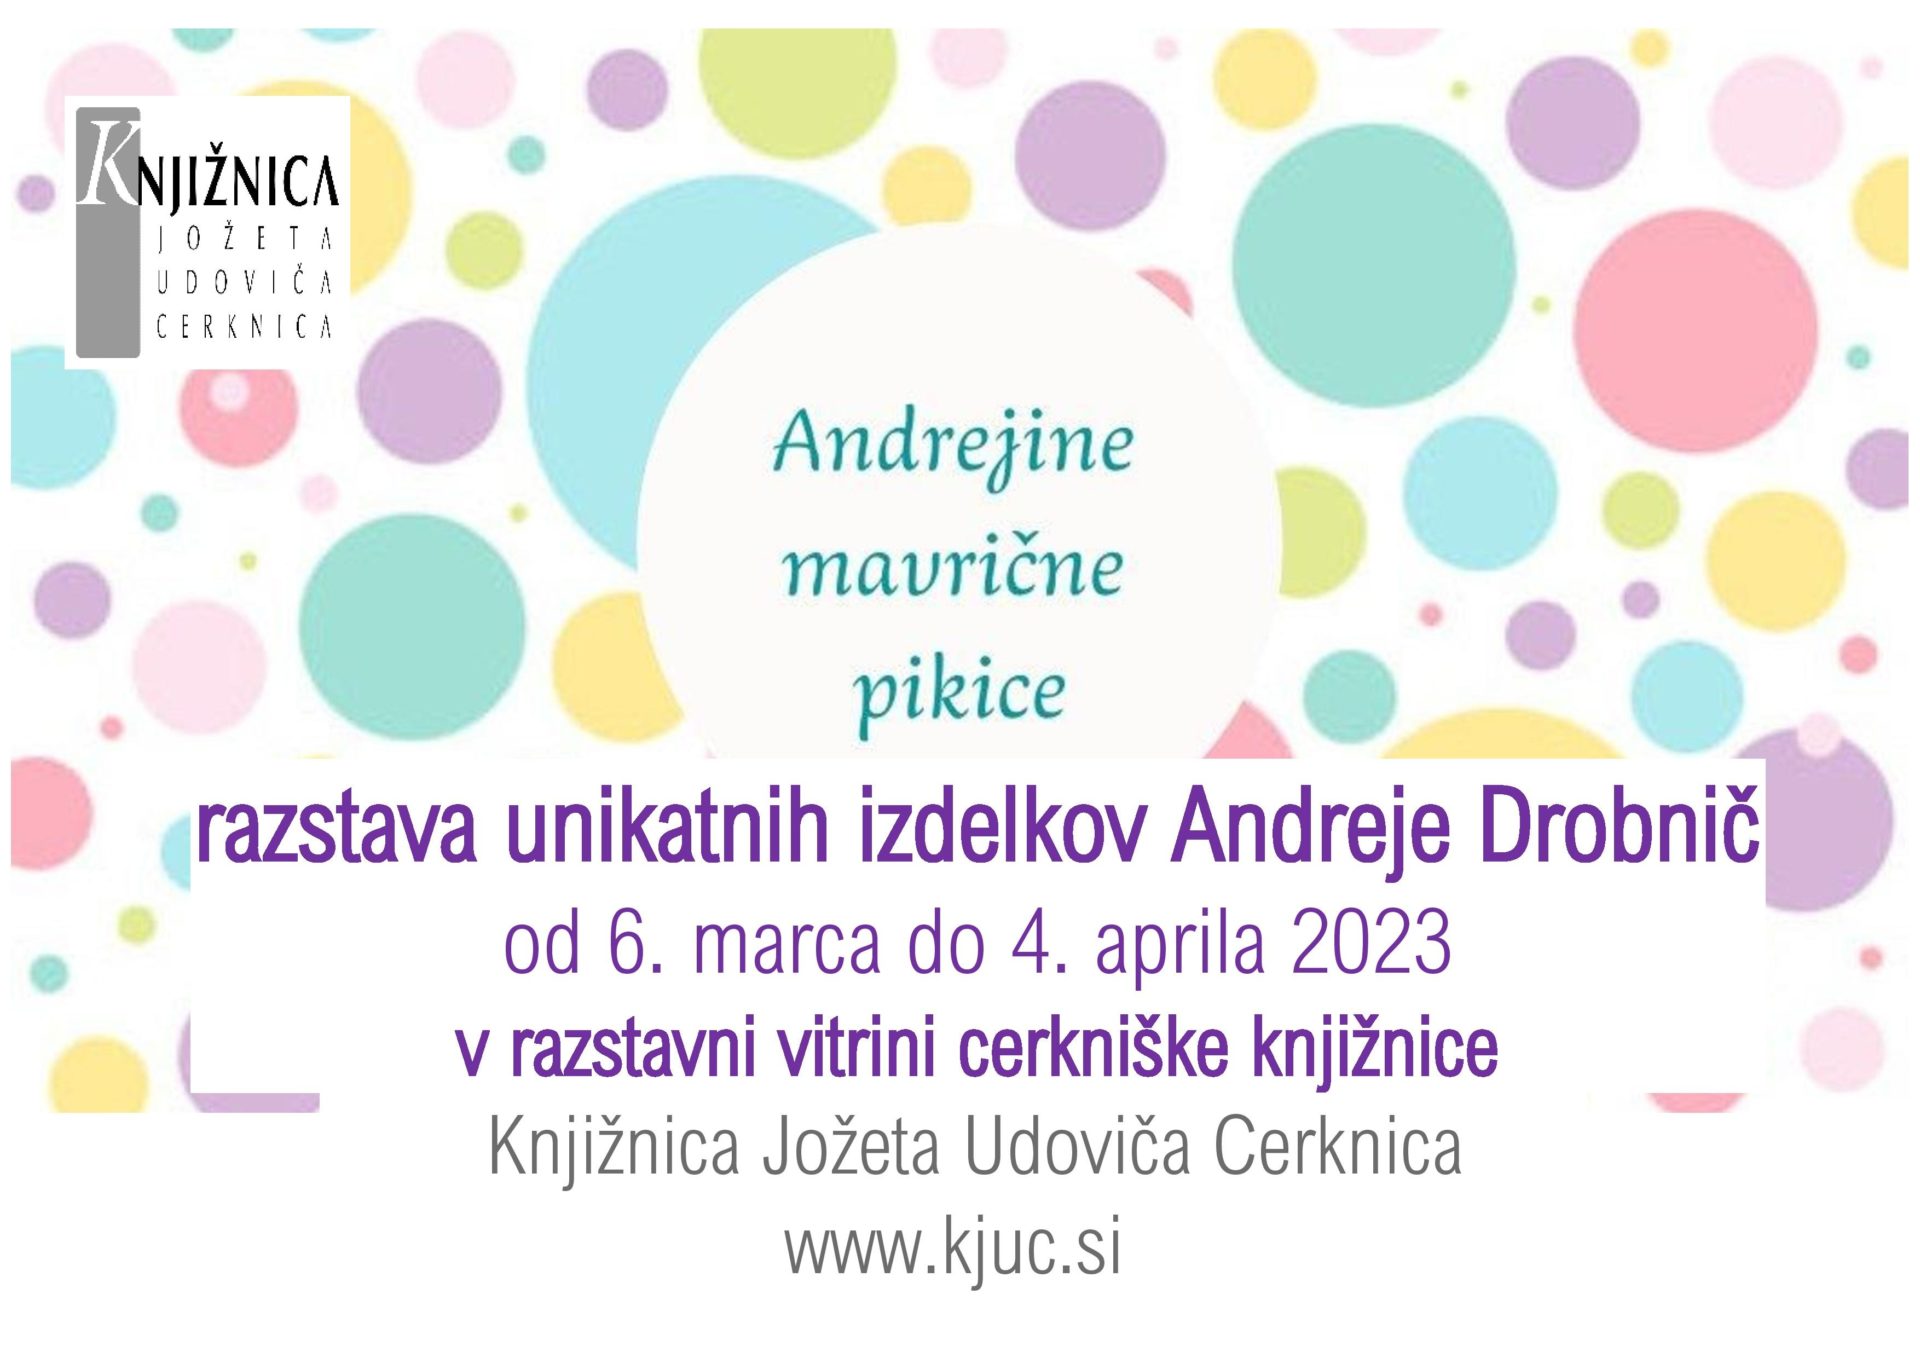 razstava unikatnih izdelkov Andreje Drobnic page 001 - Andrejine mavrične pikice - razstava unikatnih izdelkov Andreje Drobnič